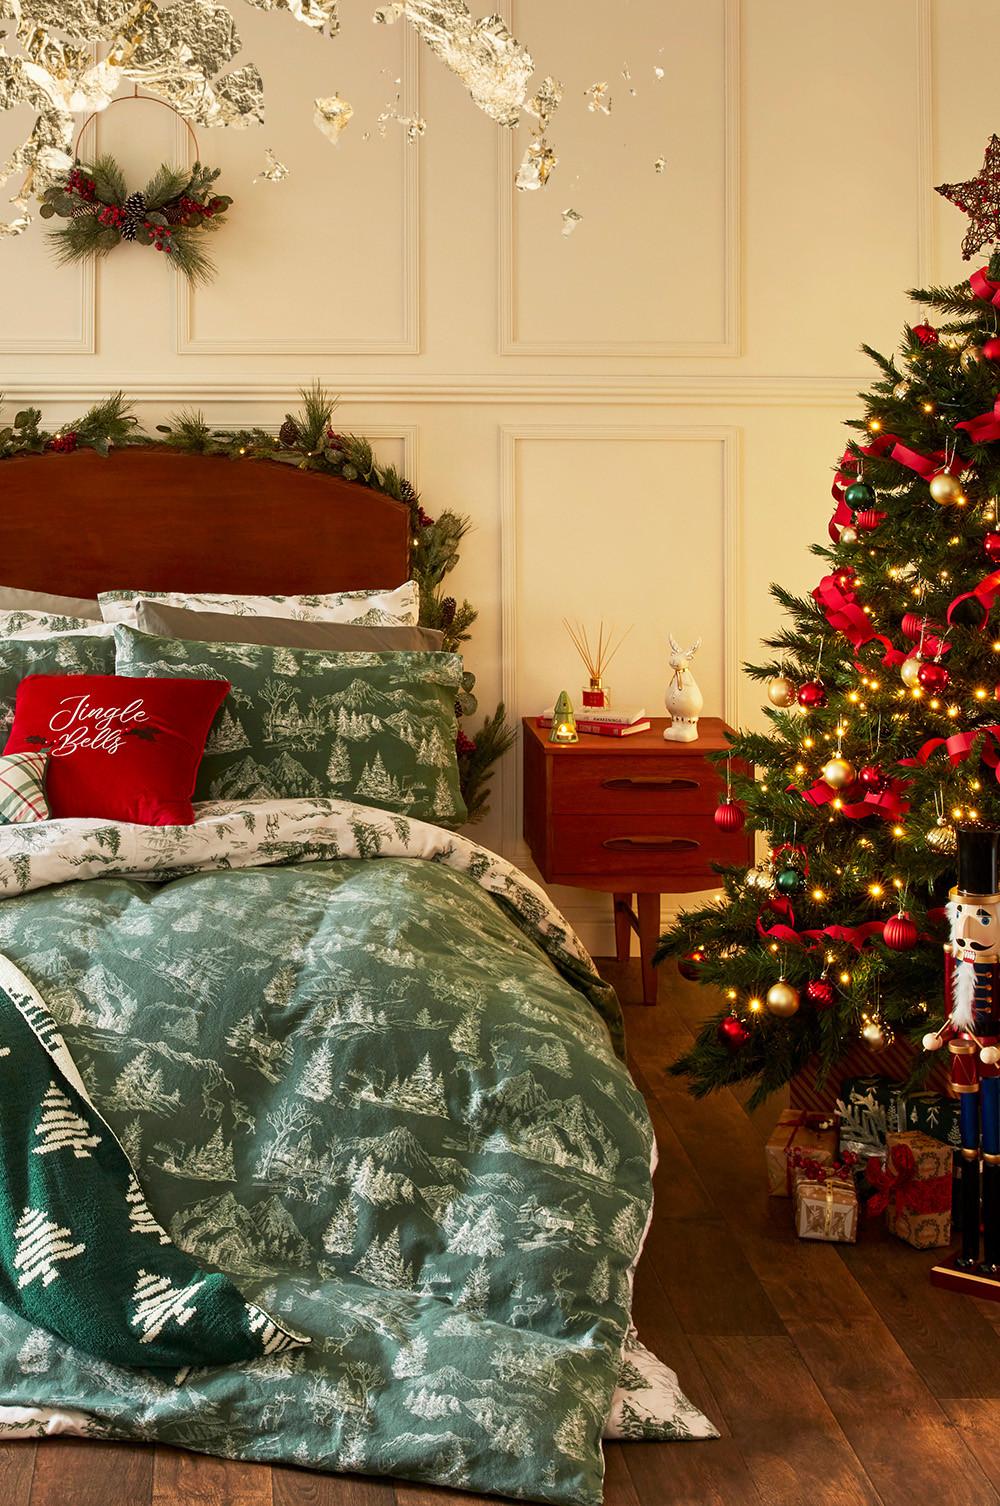 Een slaapkamer in kerstsfeer